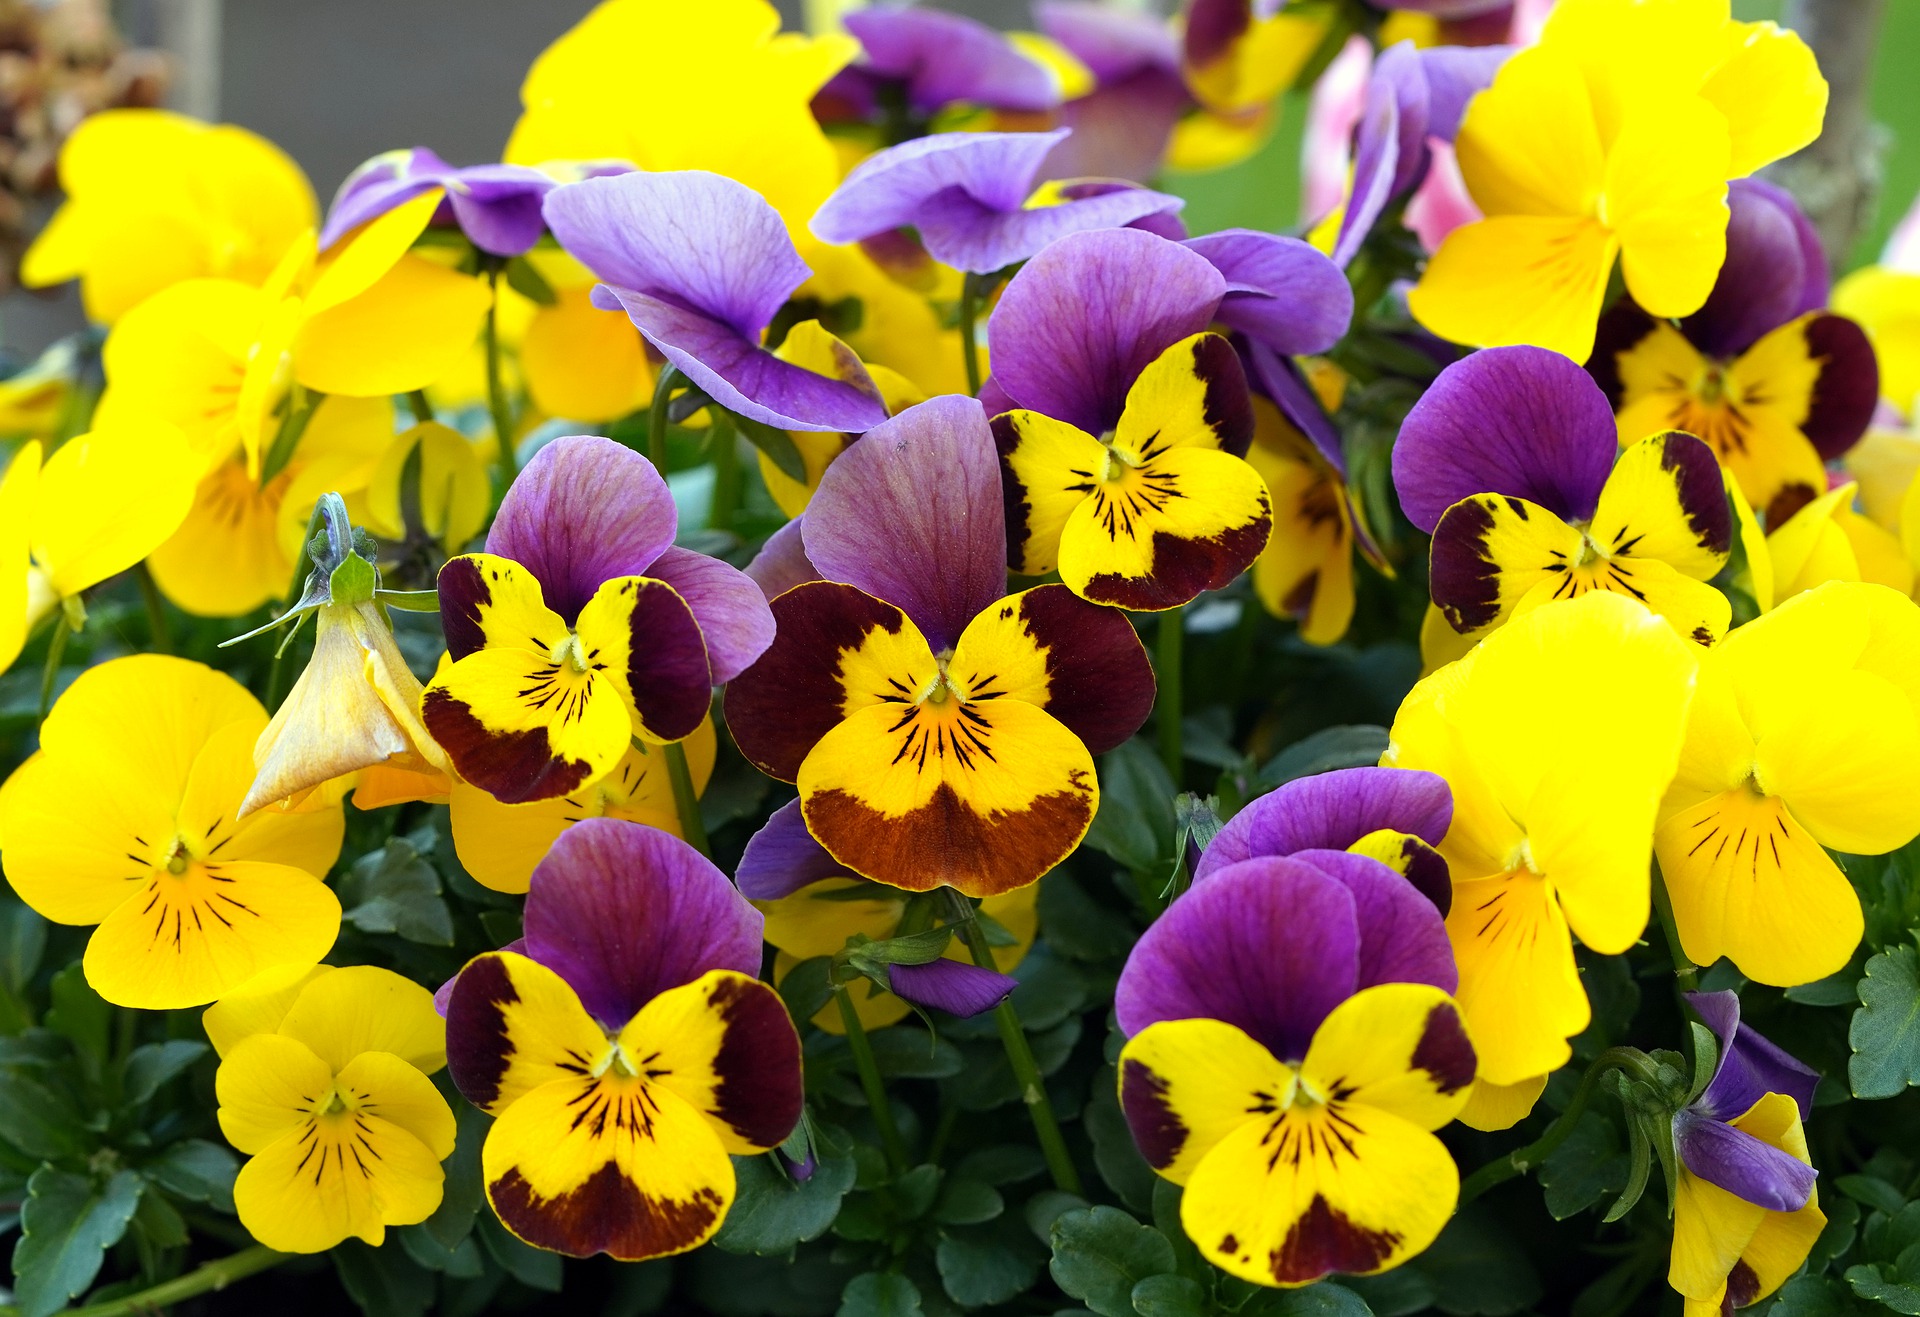 To ujęcie ukazuje piękny bratek o wyjątkowo oryginalnym kolorze - żółto-fioletowym. Kwiat ten zachwyca nie tylko swym niecodziennym ubarwieniem, ale również pięknym kształtem i delikatnymi płatkami. Zolto-fioletowy bratek to idealna roślina na wiosenne rabaty kwiatowe, która cieszy oko swym pięknem i subtelnością. Ten gatunek bratka jest łatwy w uprawie i pielęgnacji, co czyni go idealnym wyborem dla każdego miłośnika kwiatów